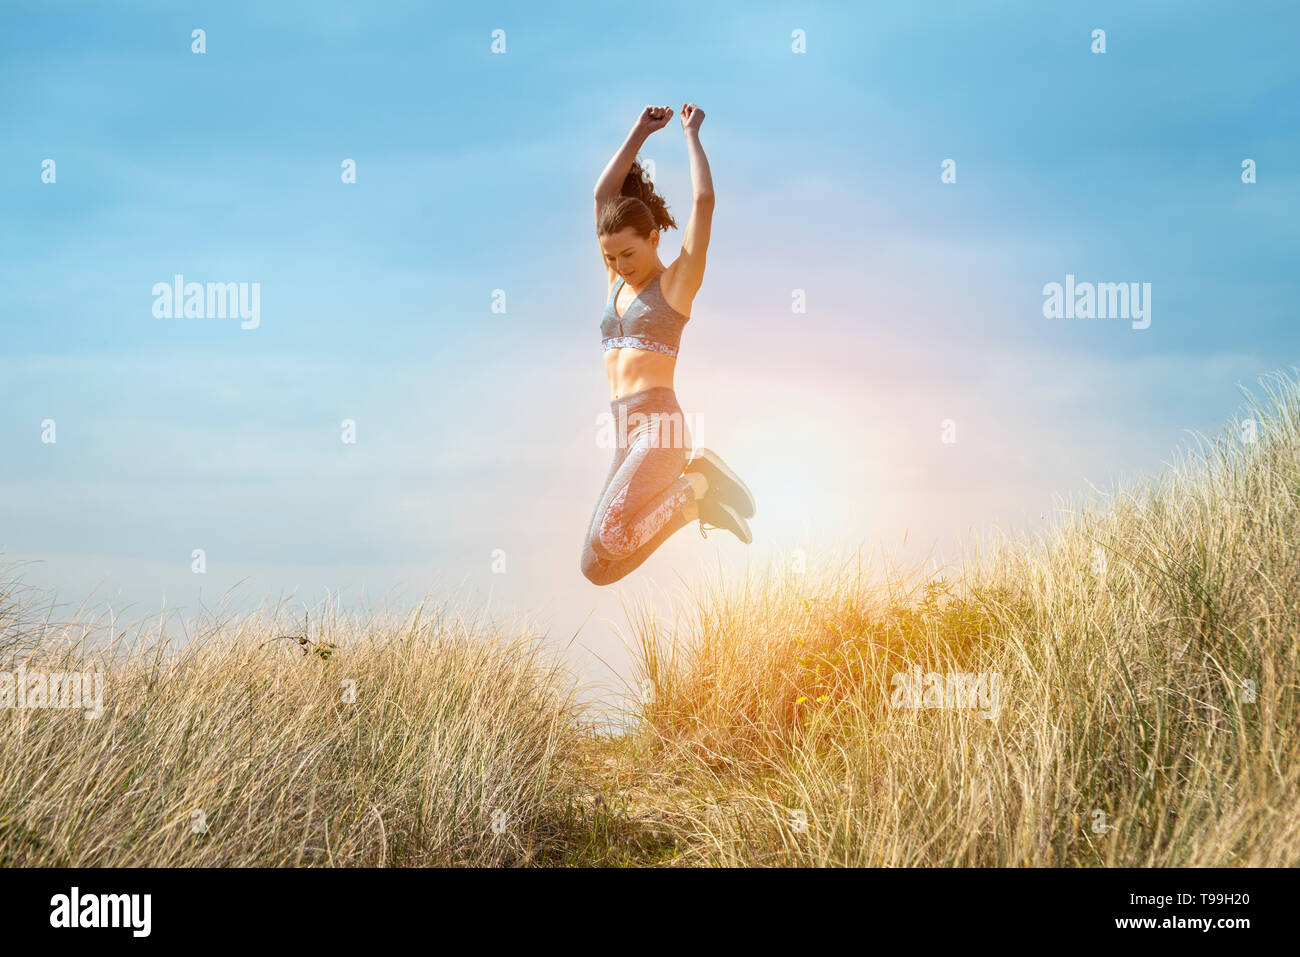 Sportliche Frau laufen und springen in den Sanddünen, gesund und glücklich, springen vor Freude. Stockfoto